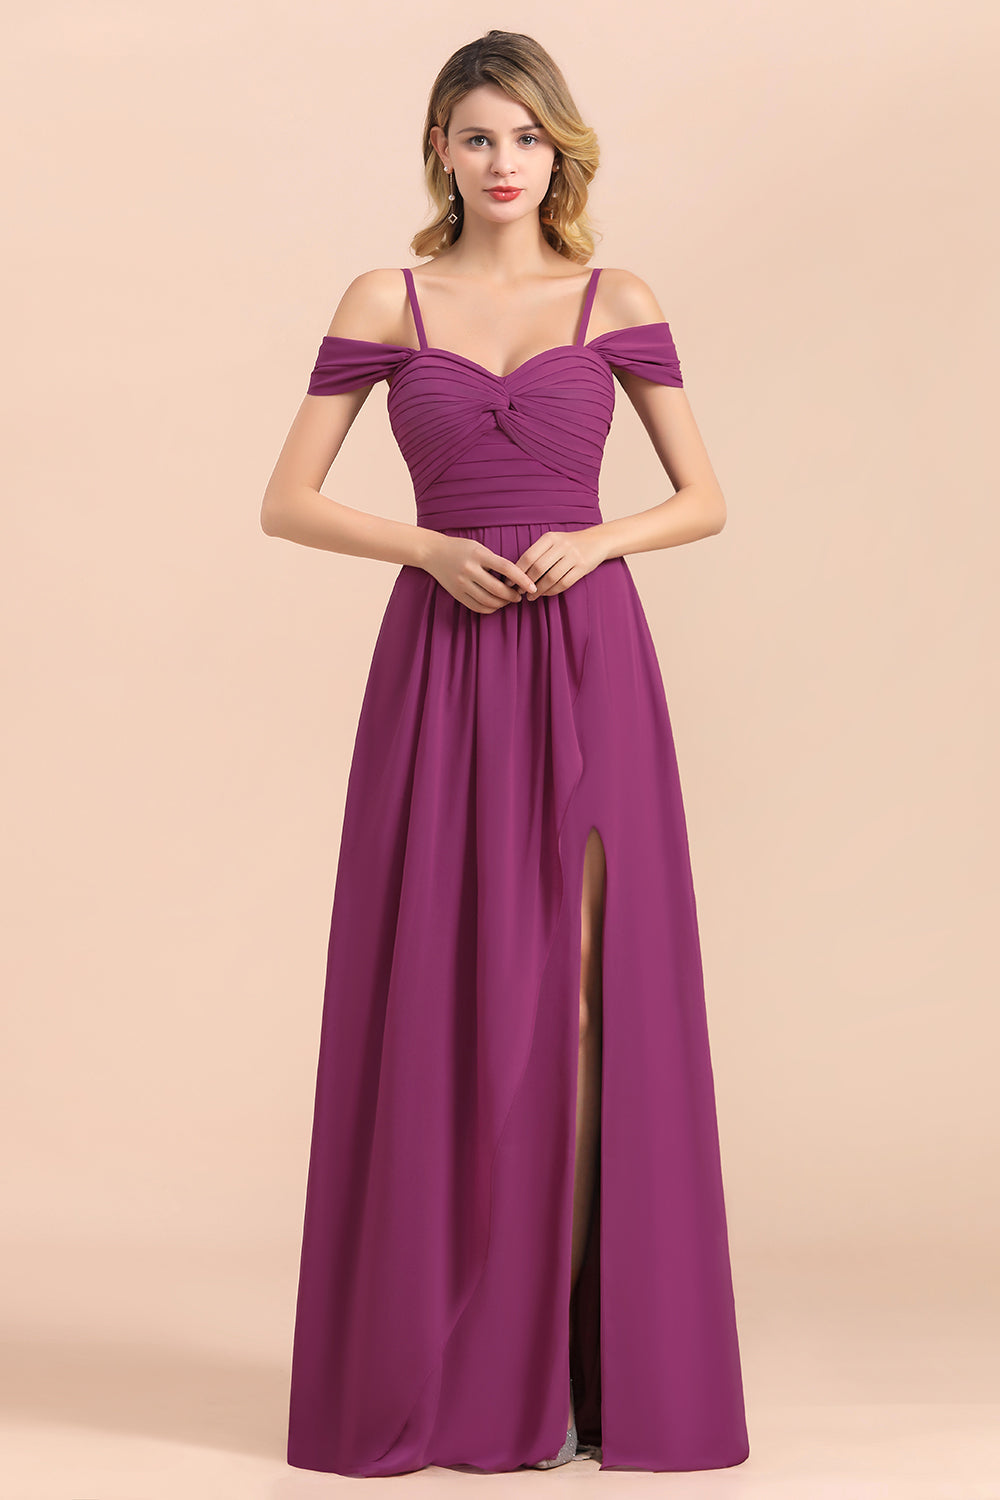 Finden Sie Purpur Brautjungfernkleider Lang Chiffon online bei babyonlinedress.de. Kleider Für Brautjungfern mit hocher qualität bekommen.